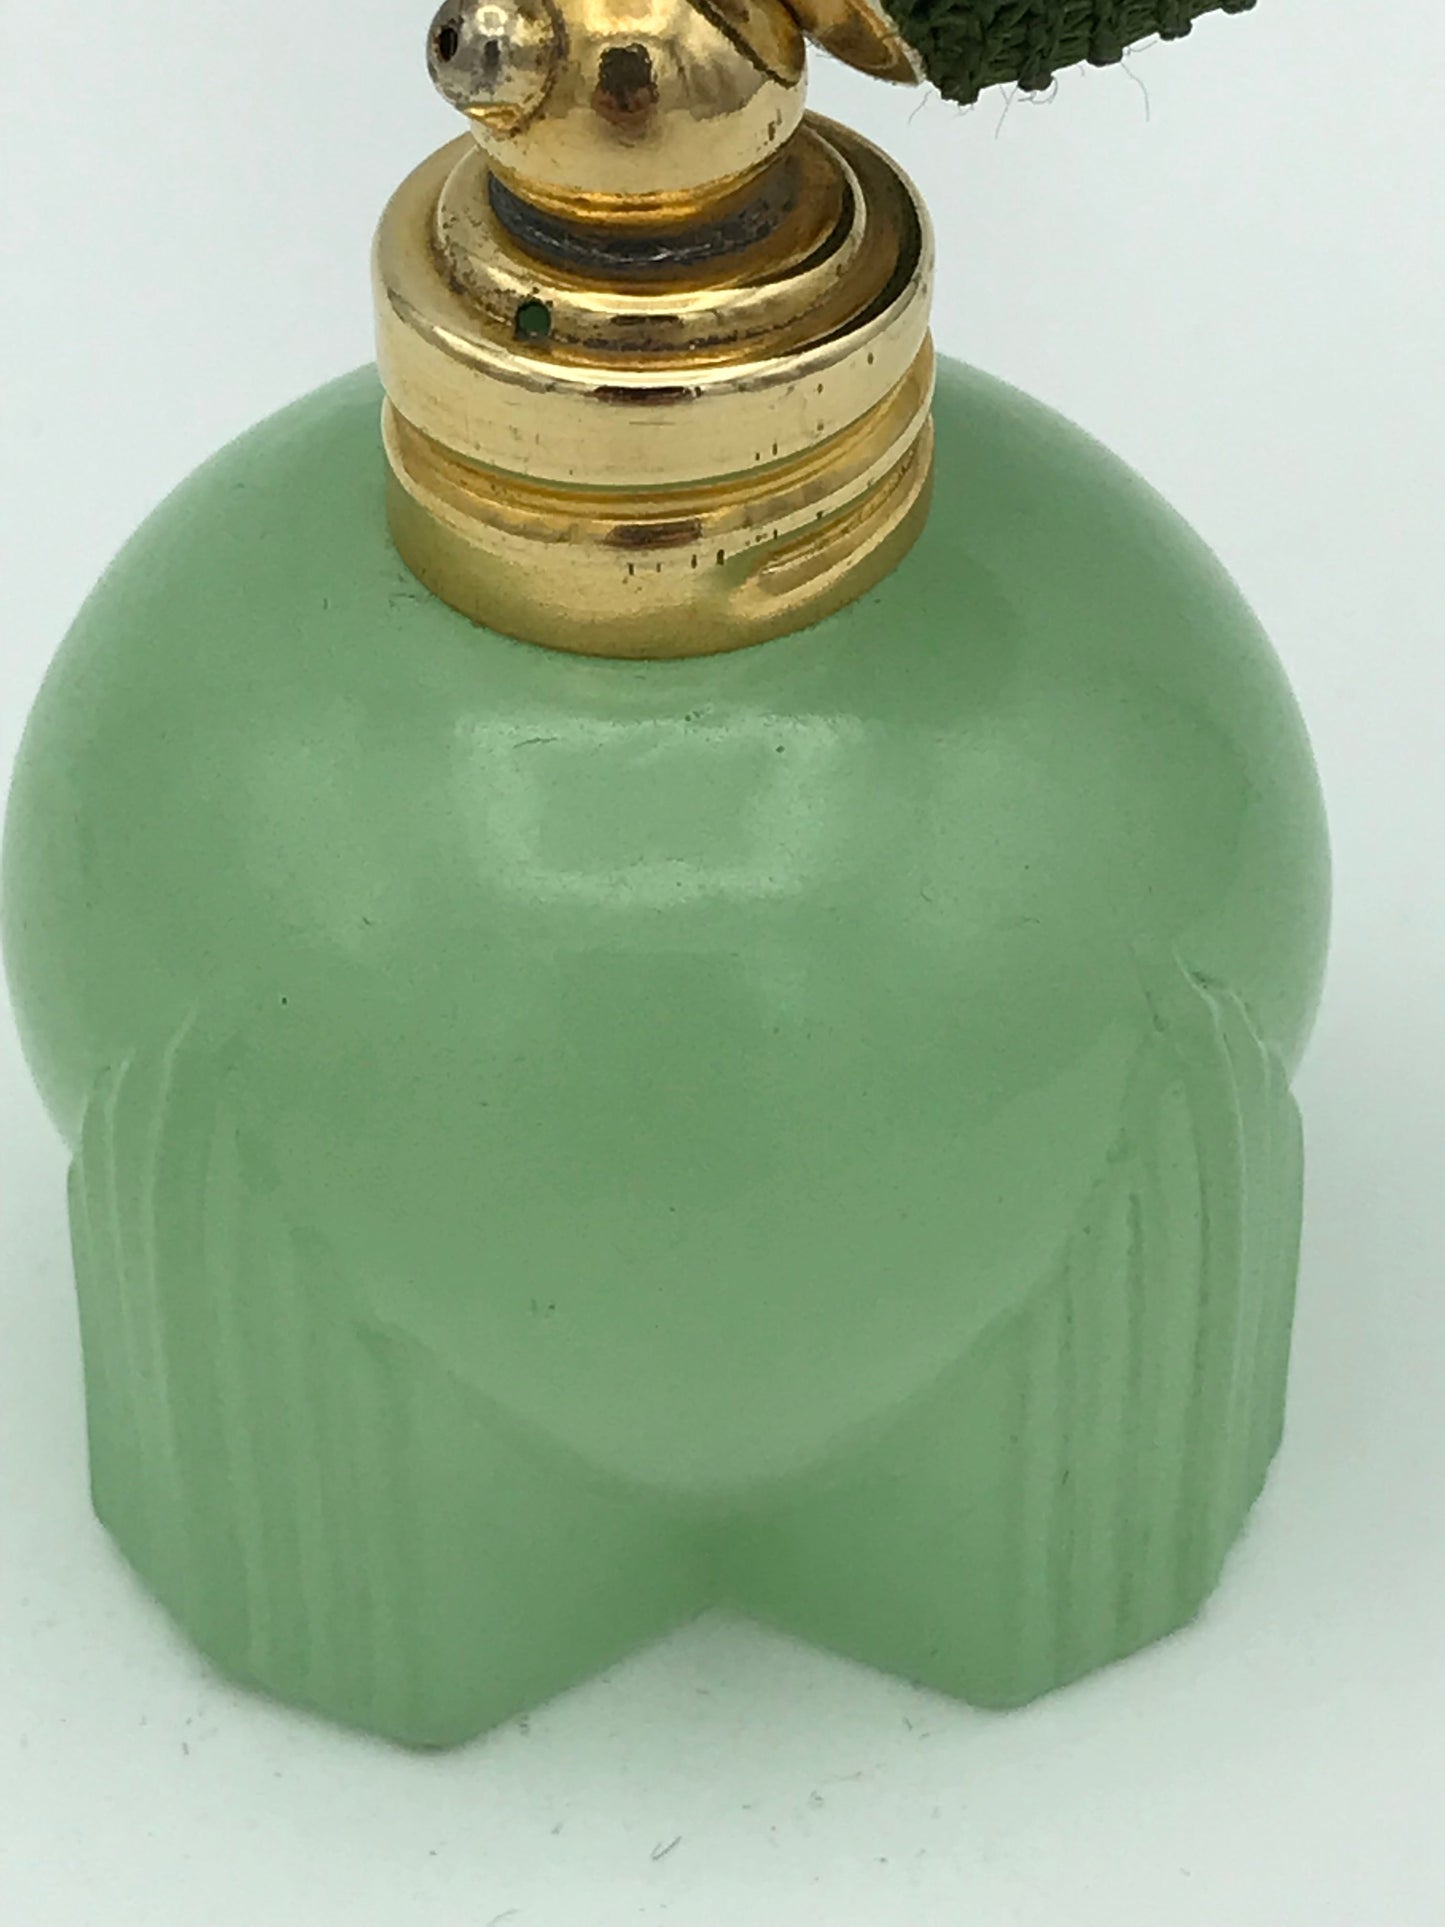 Vaporisateur à parfum Art déco de petite taille vert - Premium Vaporisateur à parfum from Atelier Guillot - Just €125! Shop now at Atelier Guillot